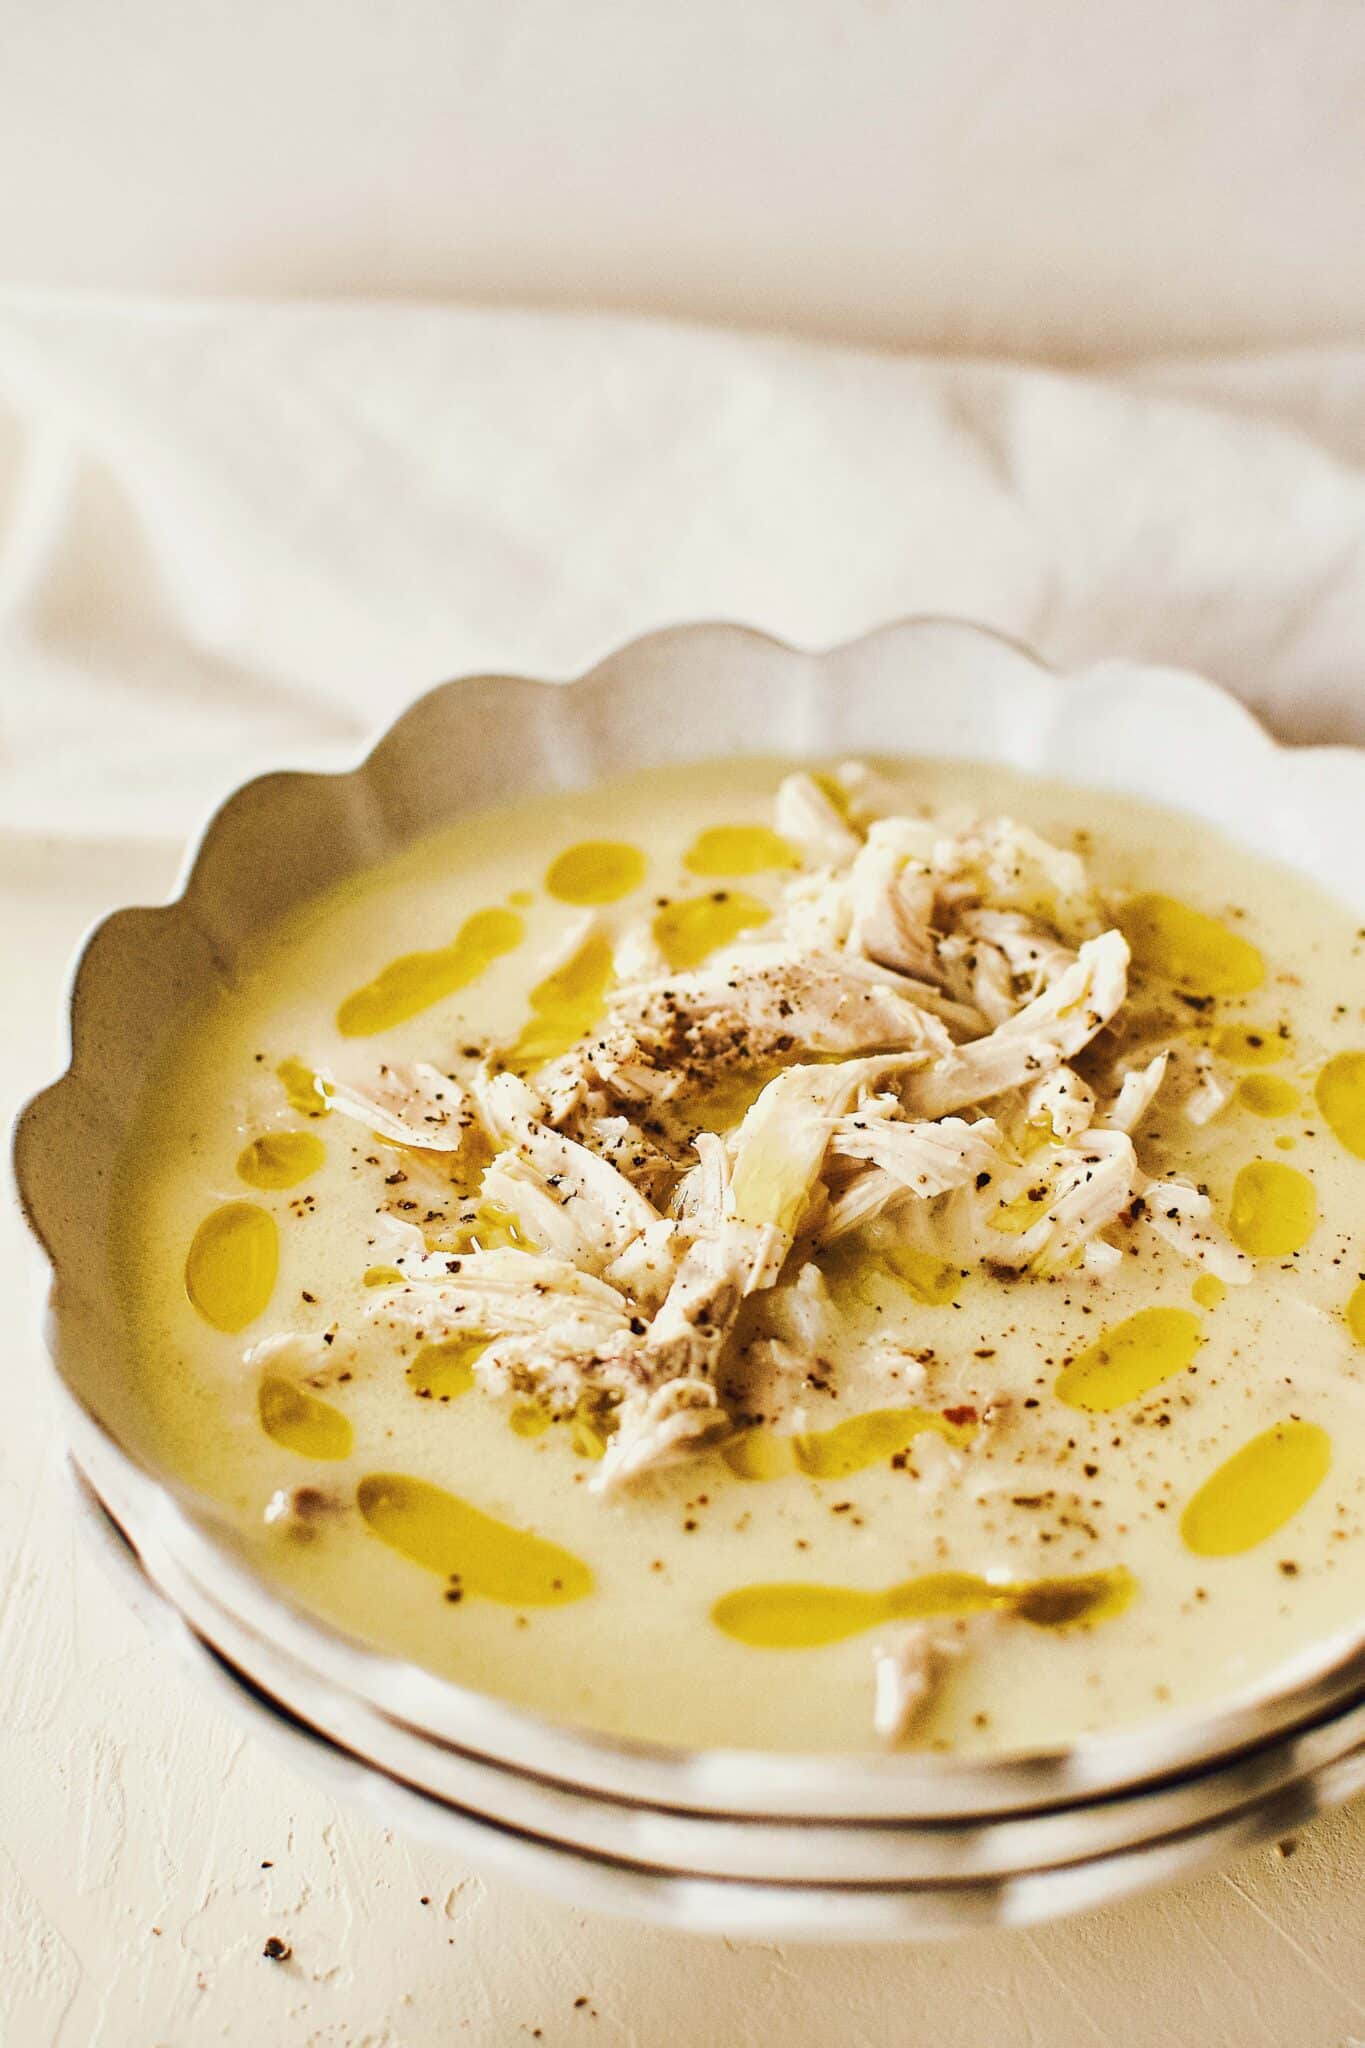 Greek Avgolemono Lemon Rice Soup in a white bowl ready to eat.